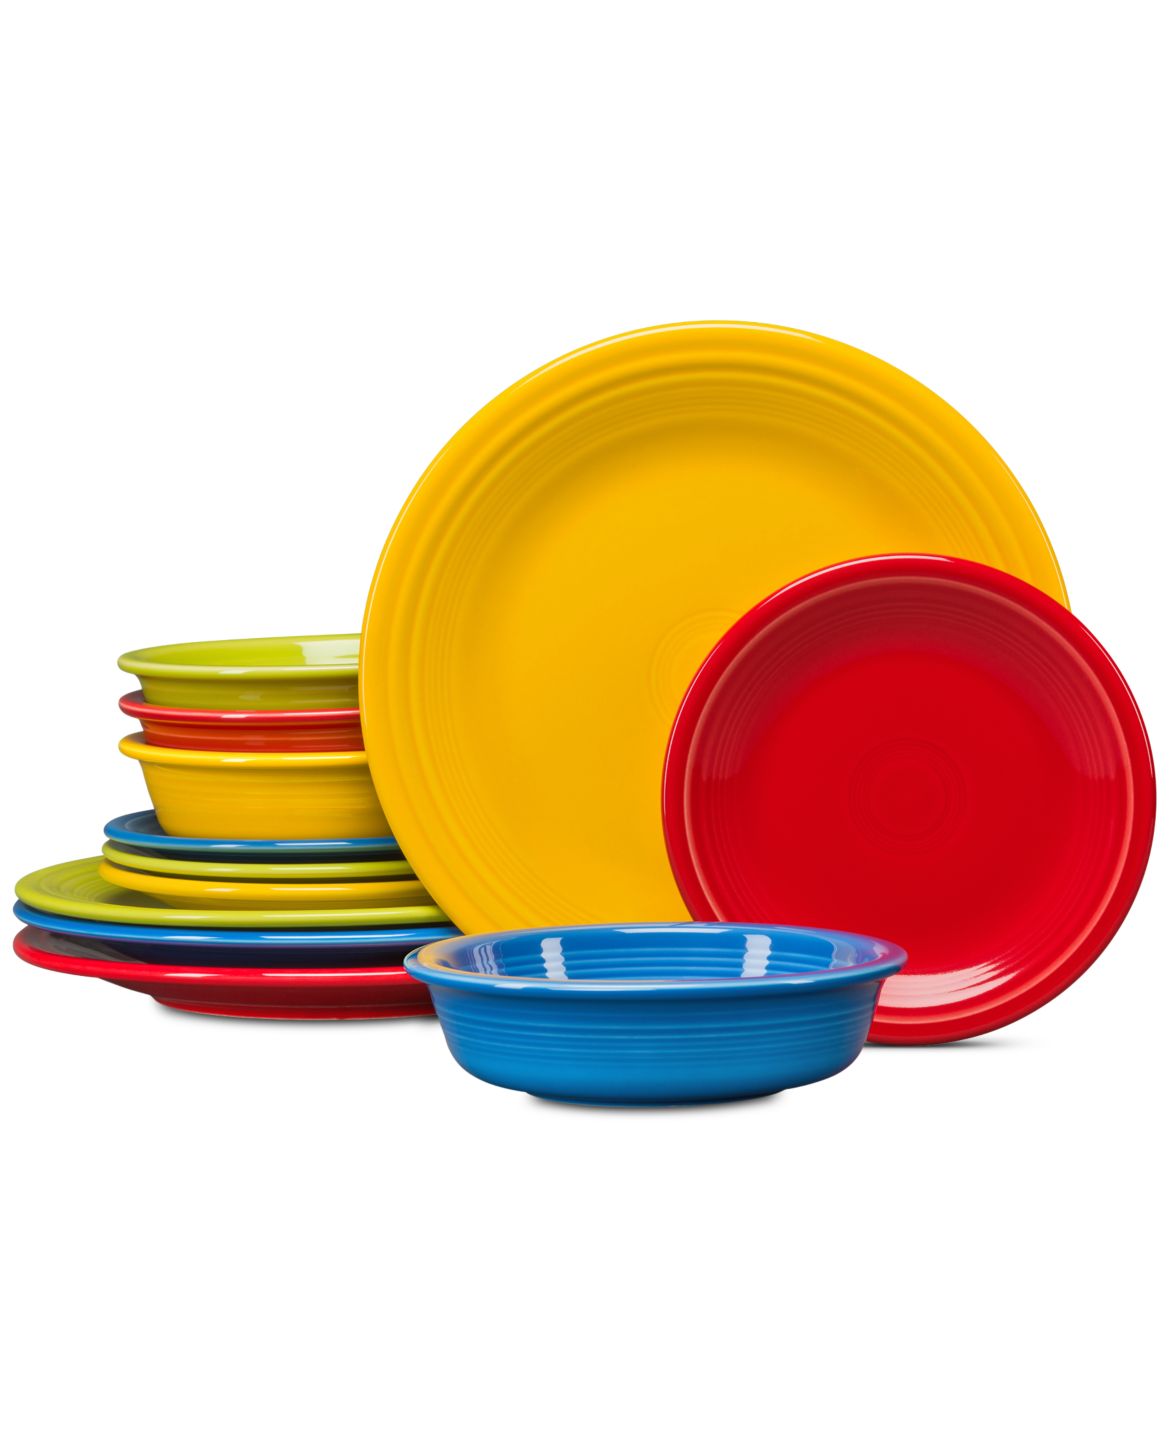 Разноцветная посуда